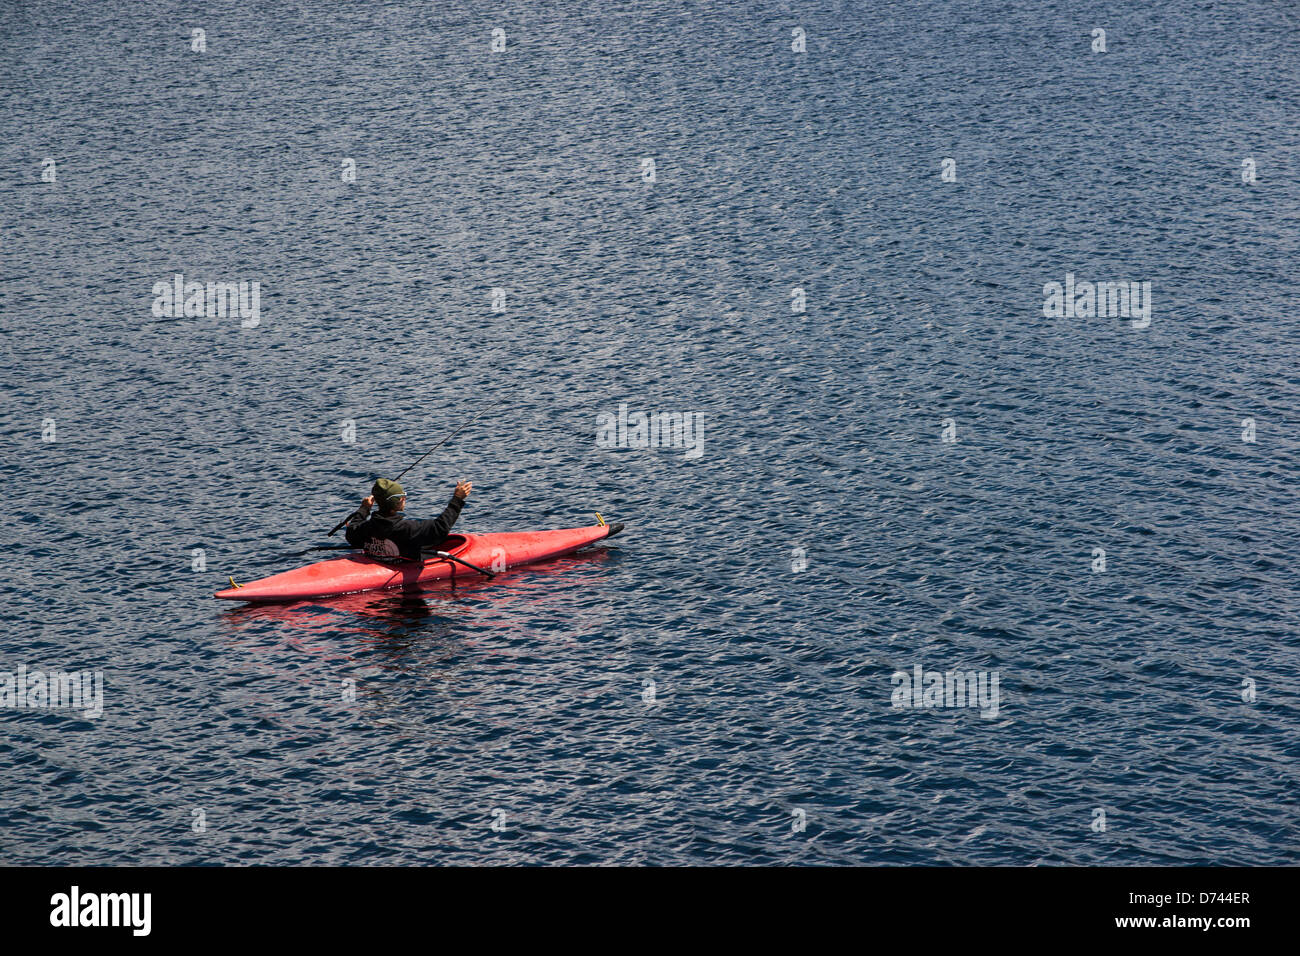 Un uomo è visto mentre la pesca da un kayak rosso in un lago con profondo blu dell'acqua. Denver, Colorado. Foto Stock